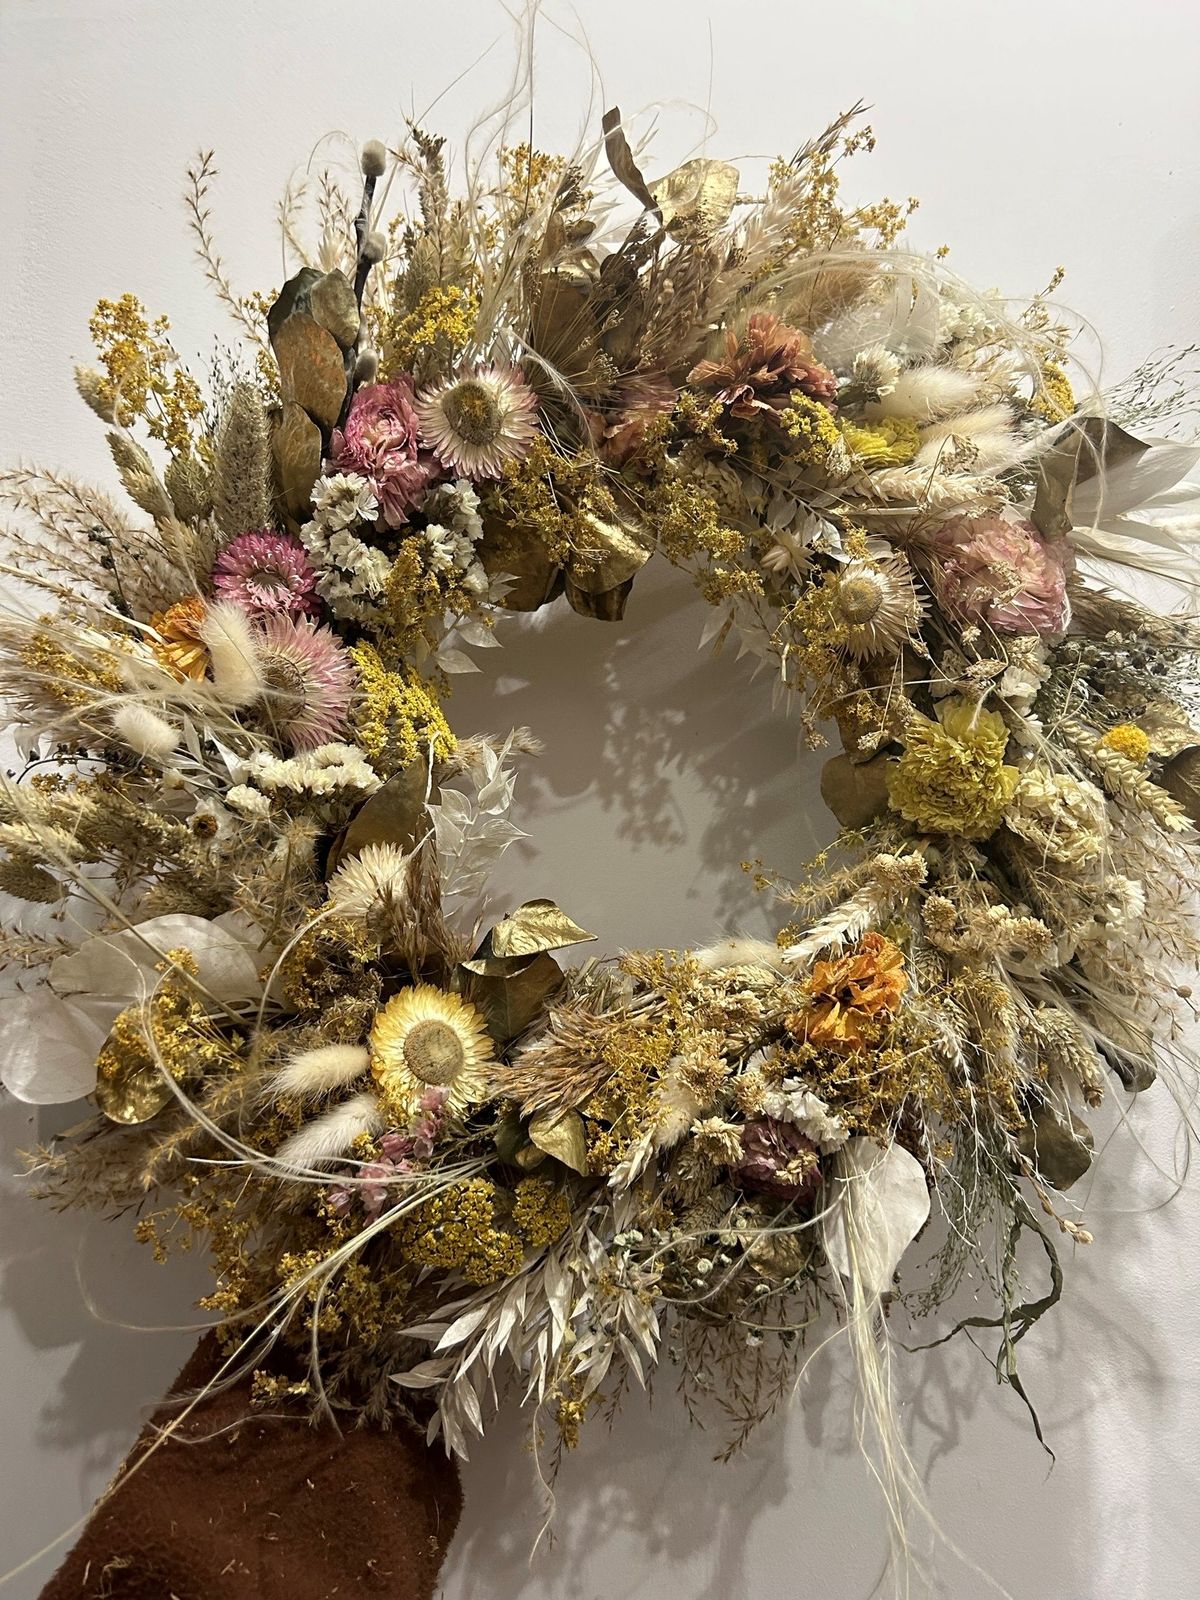 Dried Flower Wreath Workshop